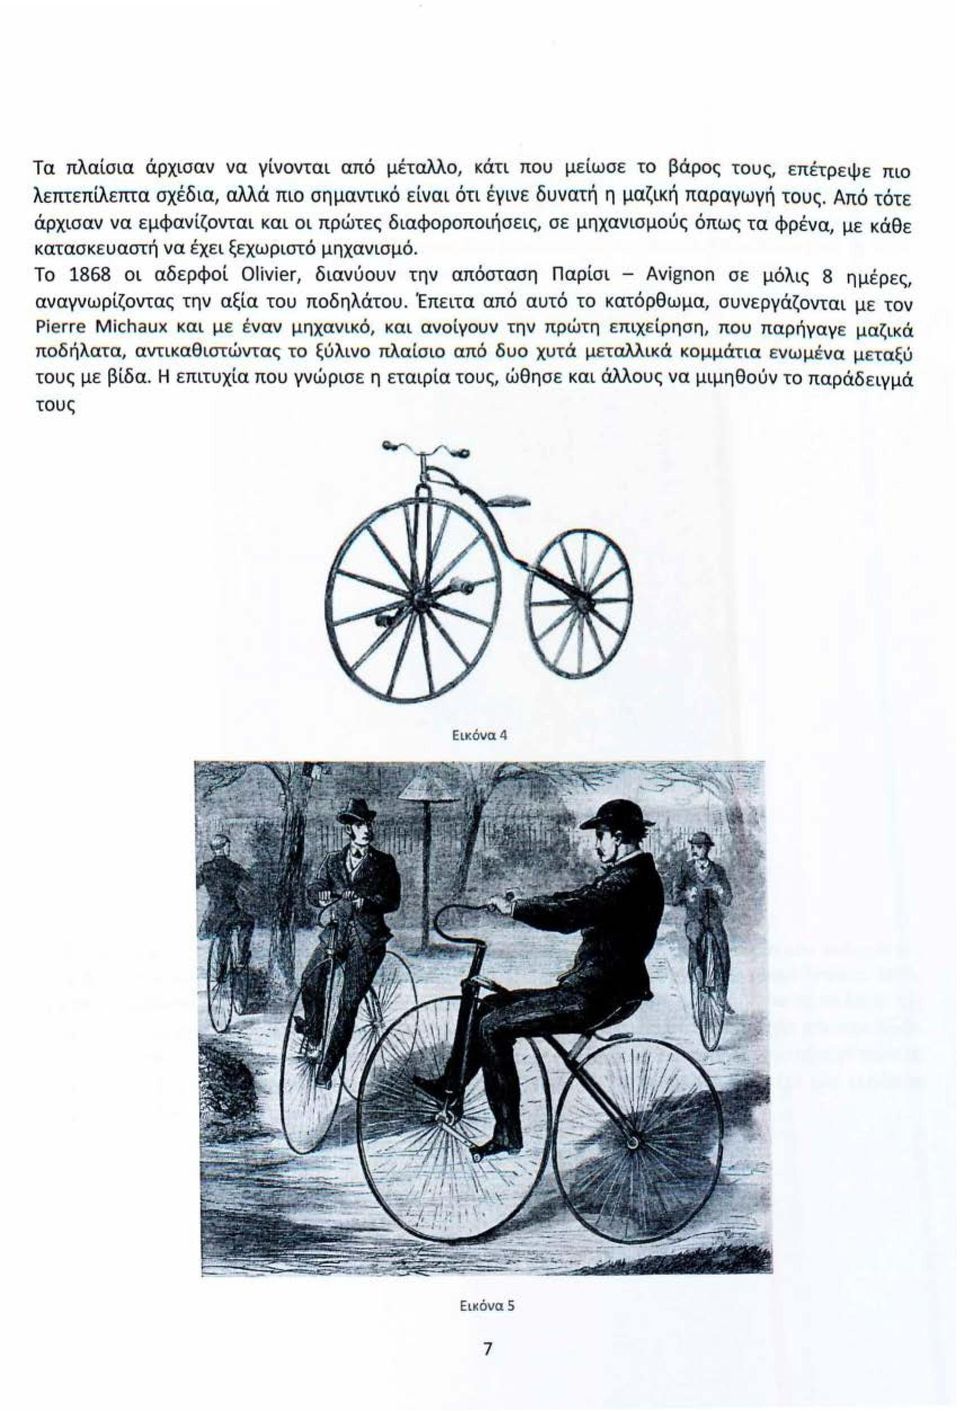 Το 1868 οι αδερφοί Oliνier, διανύουν την απόσταση Παρίσι - Aνignon σε μόλις 8 ημέρες, αναγνωρίζοντας την αξία του ποδηλάτου.